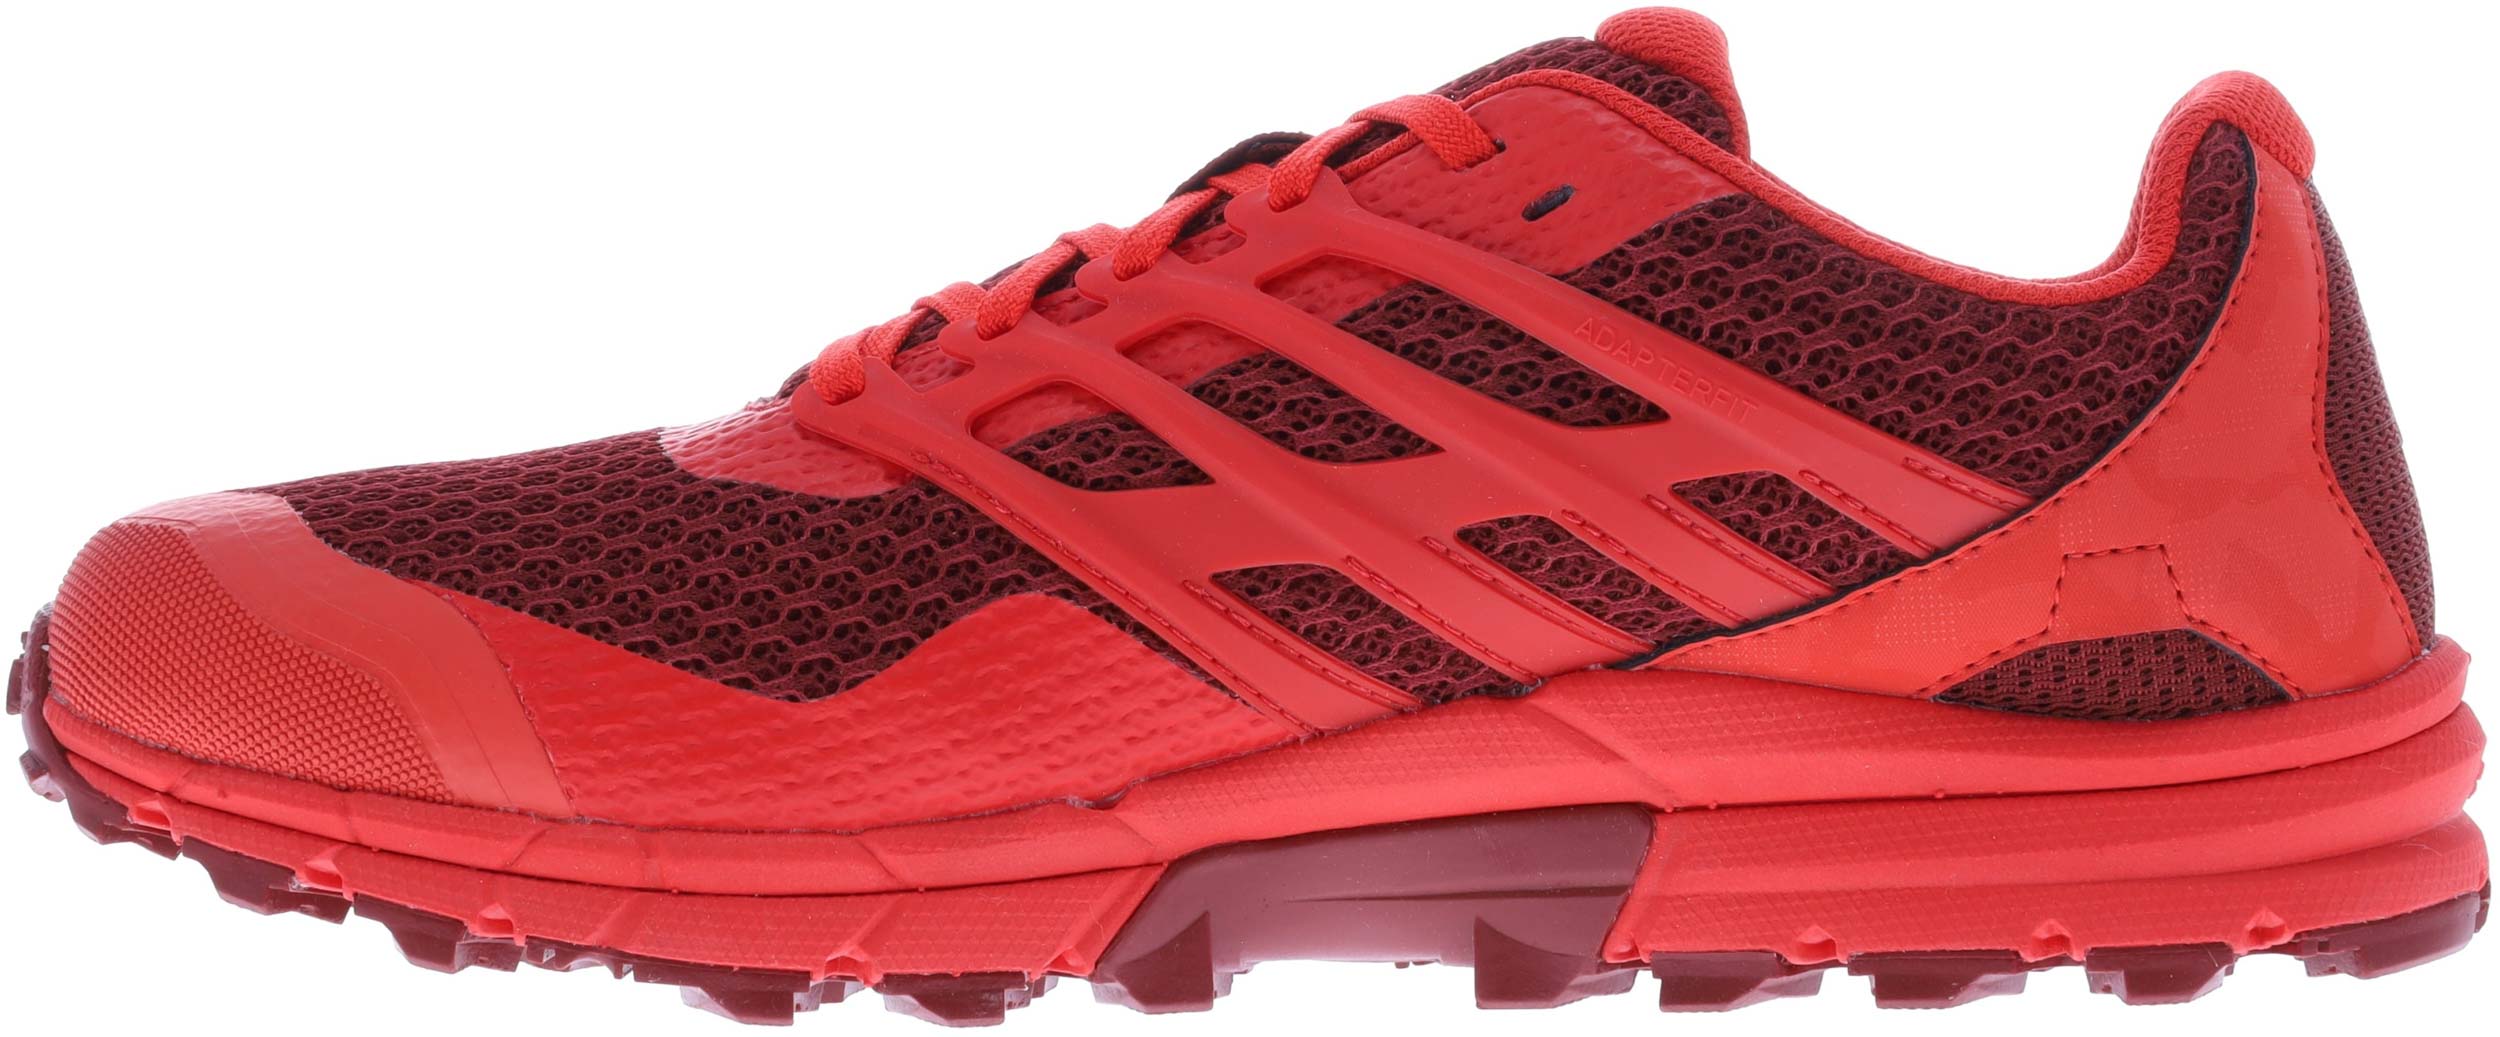 Pánské běžecké boty Inov-8 Men Trailtalon 290 Dark Red|42,5